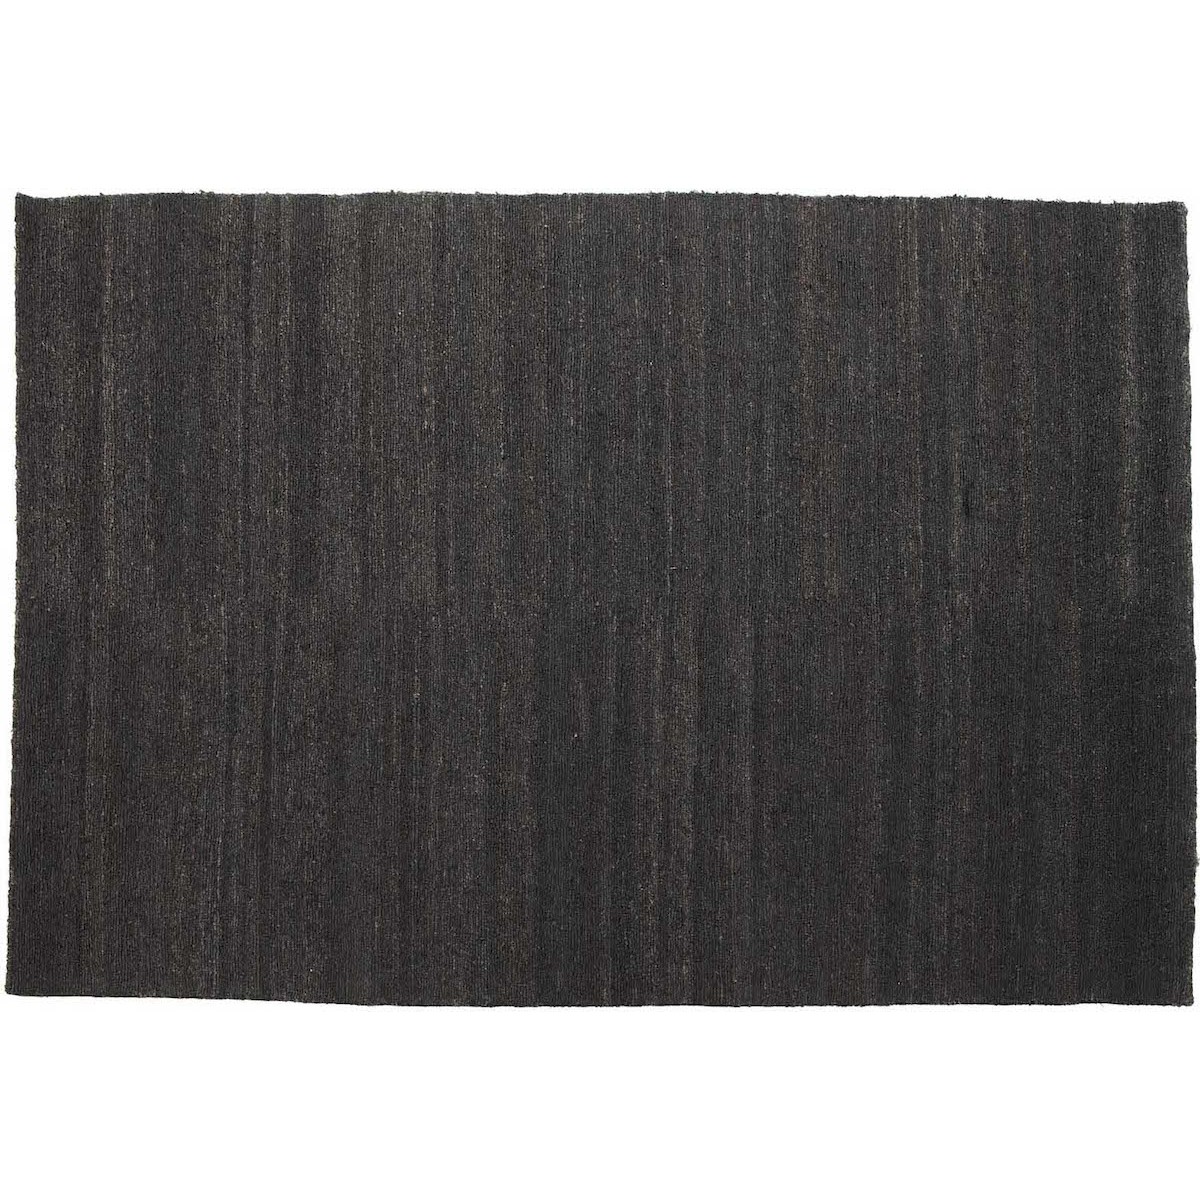 170x240cm - noir - tapis Earth